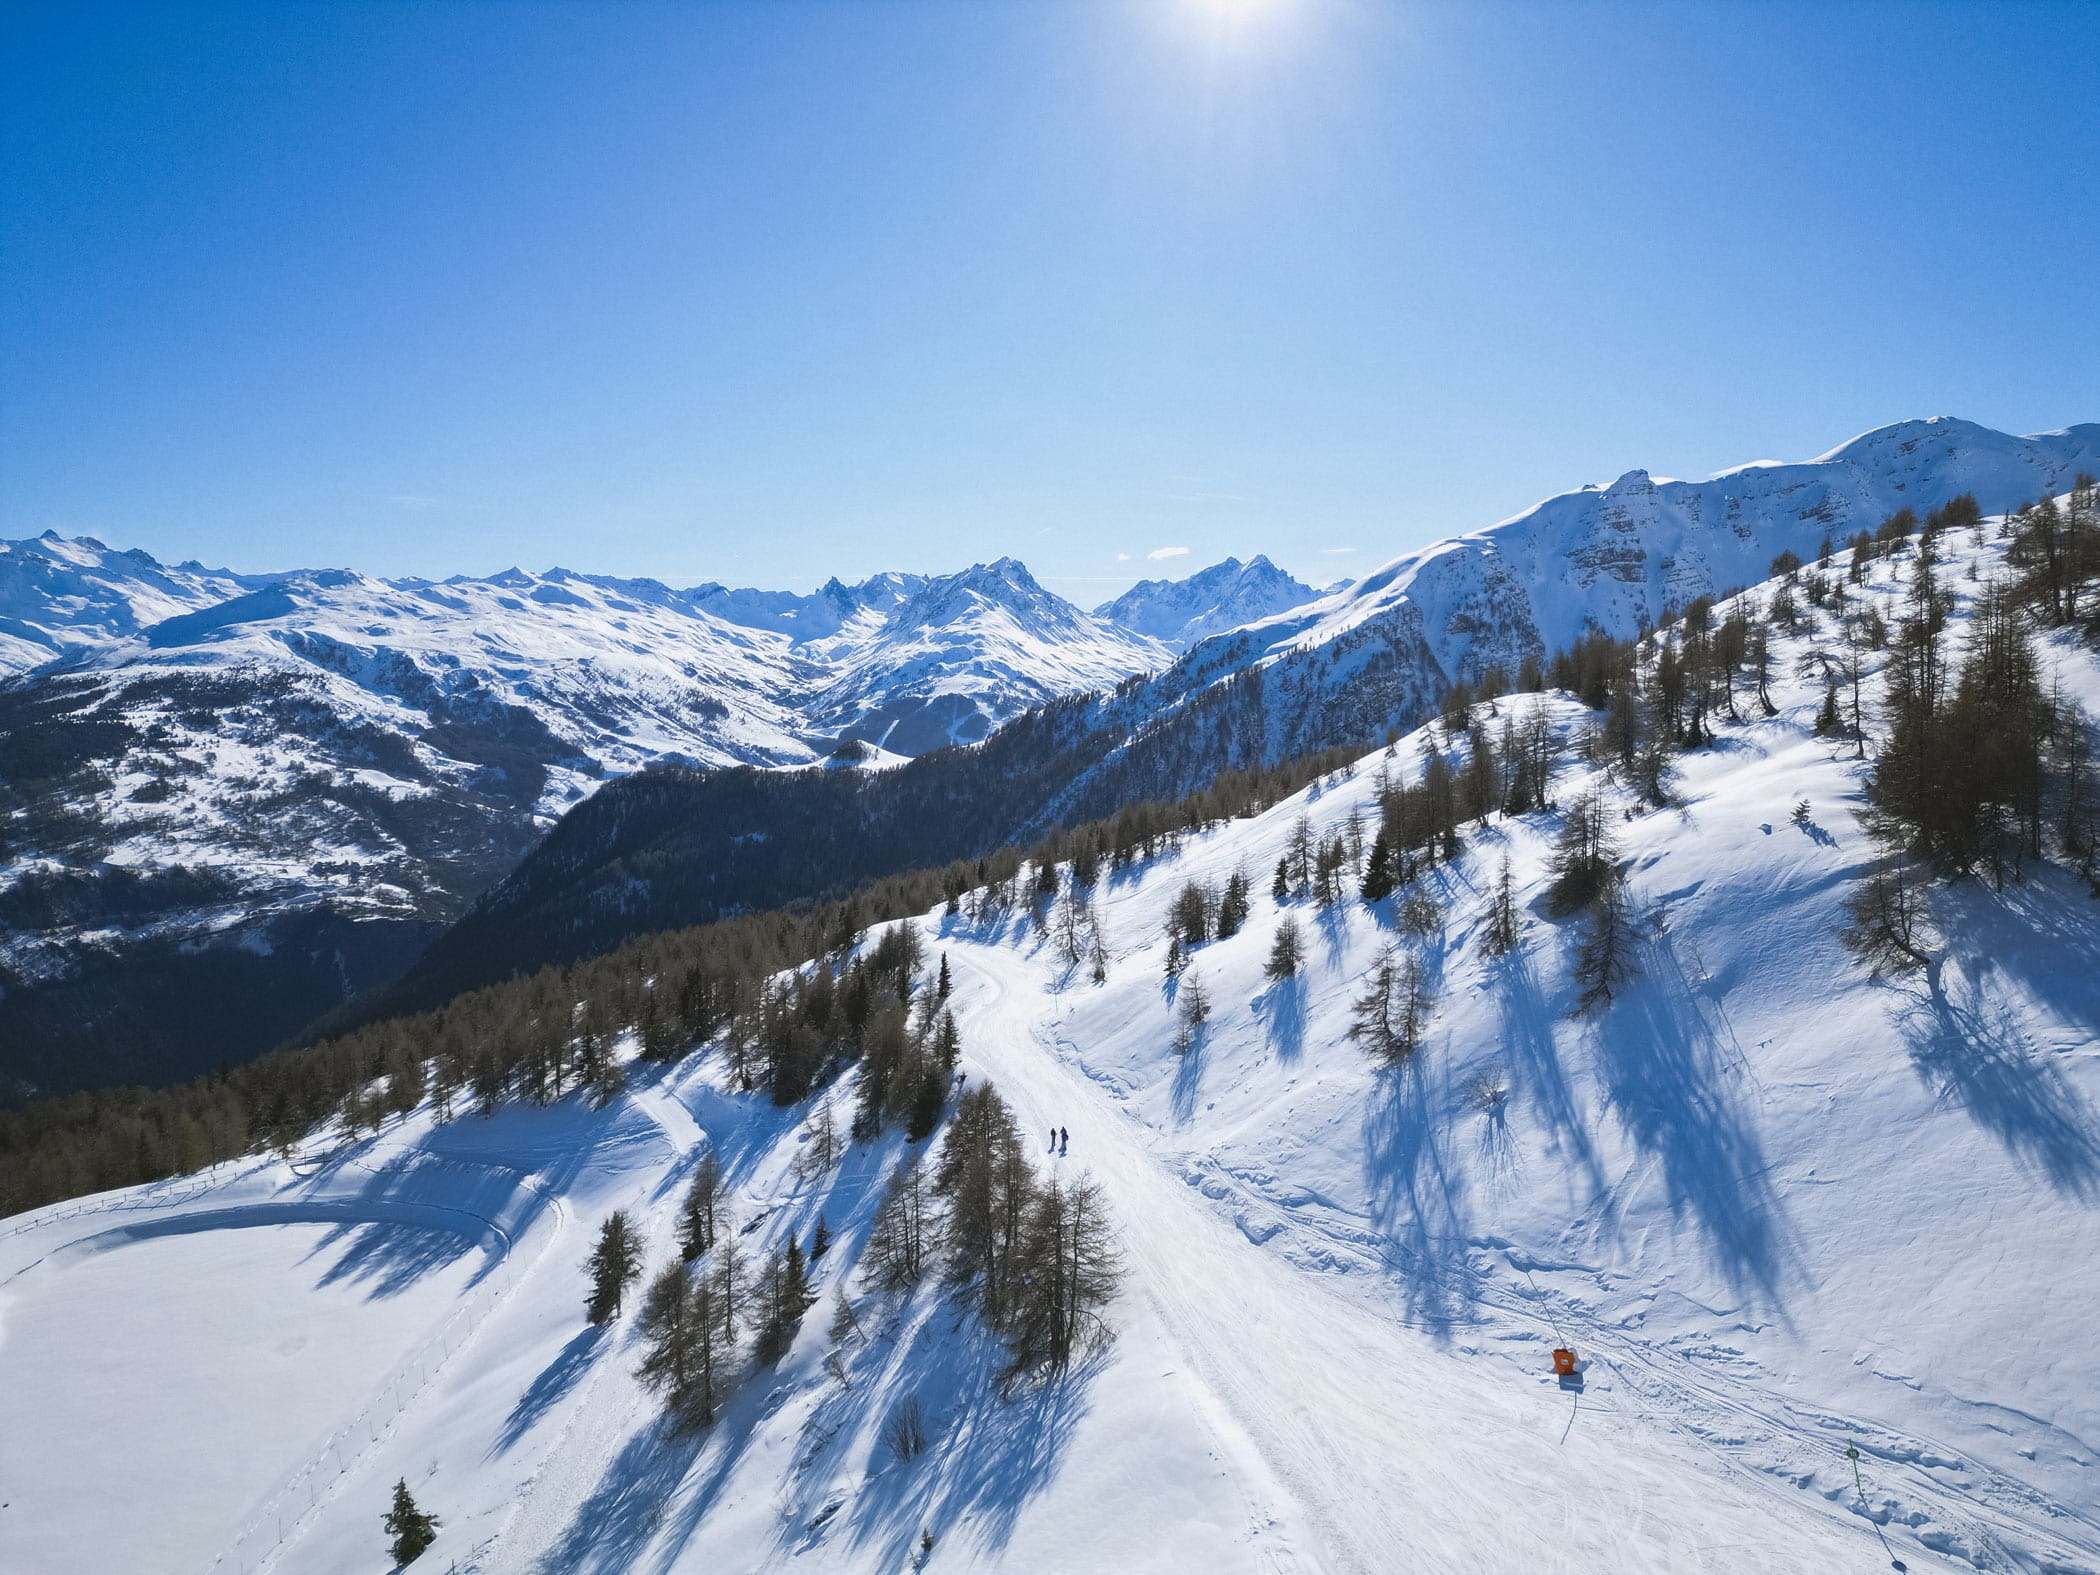 Domaine skiable familial en Savoie aux Karellis